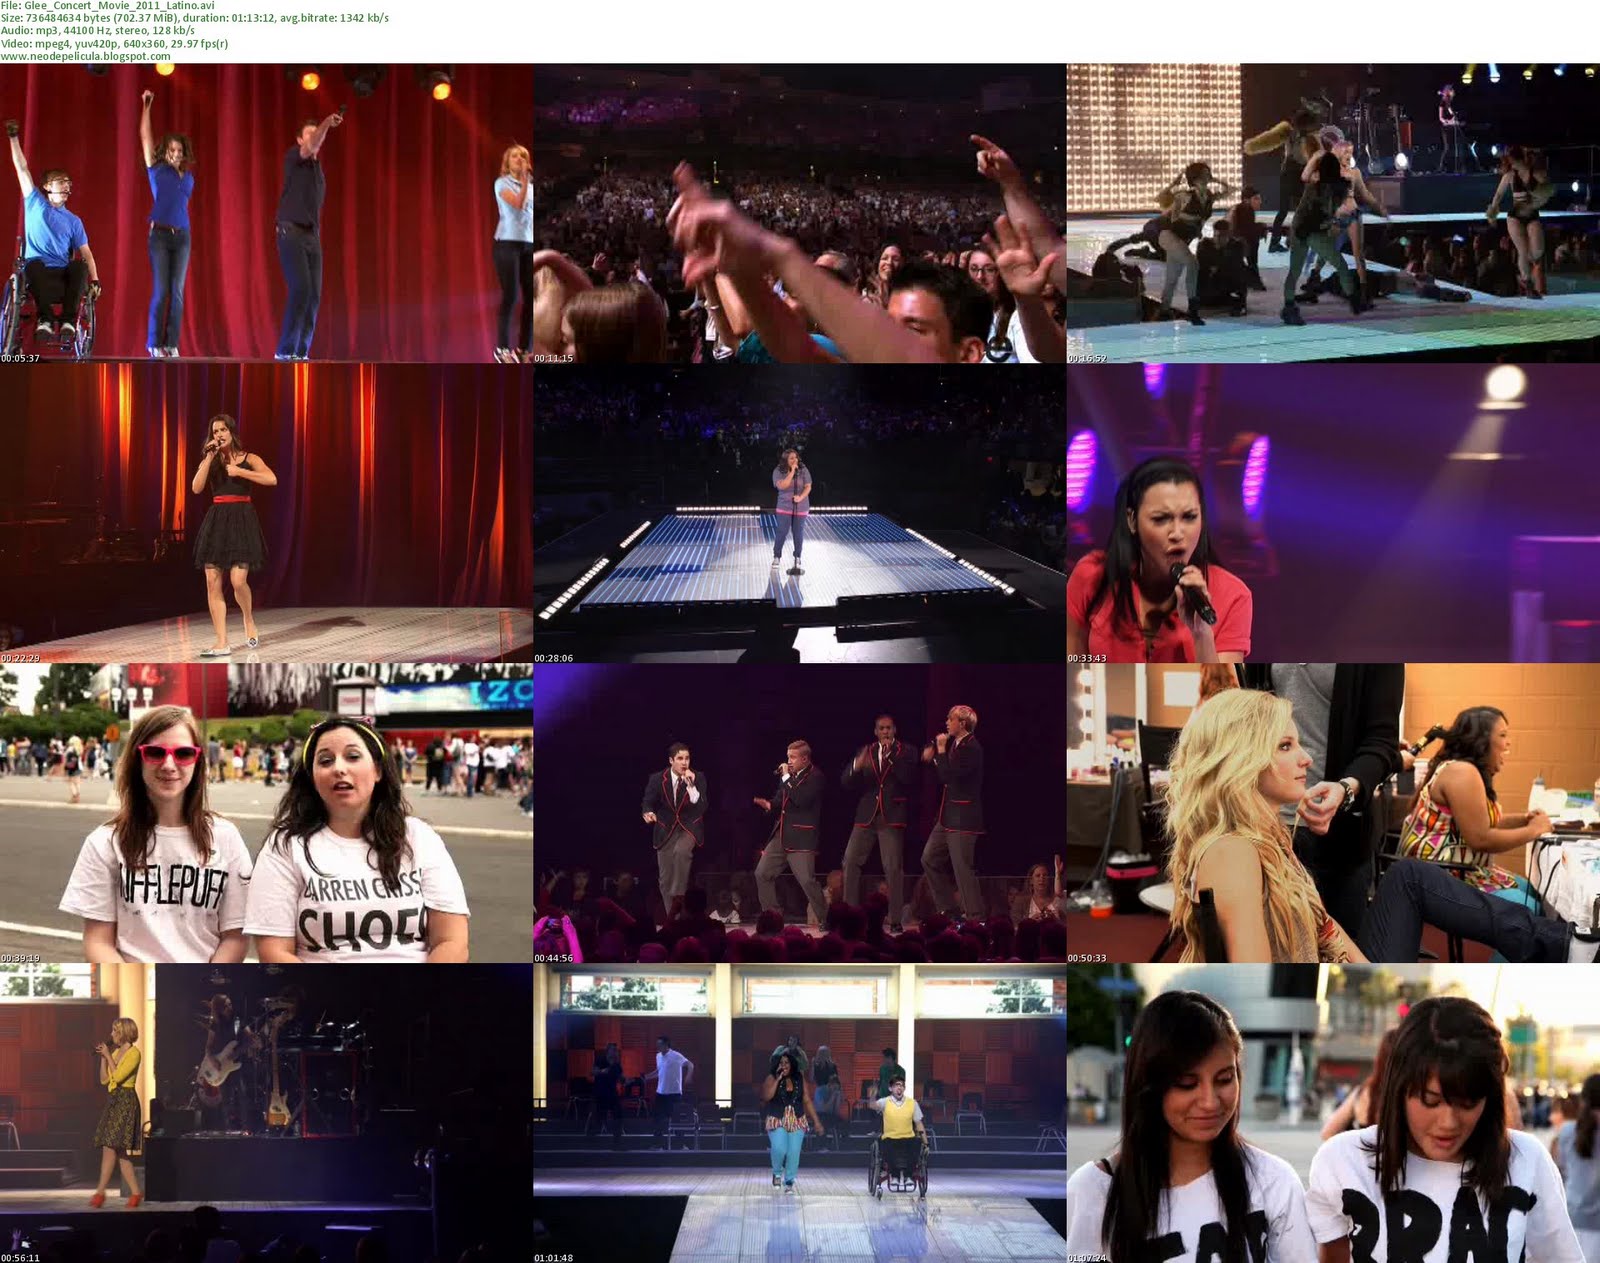 Glee_Concert_Movie_2011_Latino.jpg